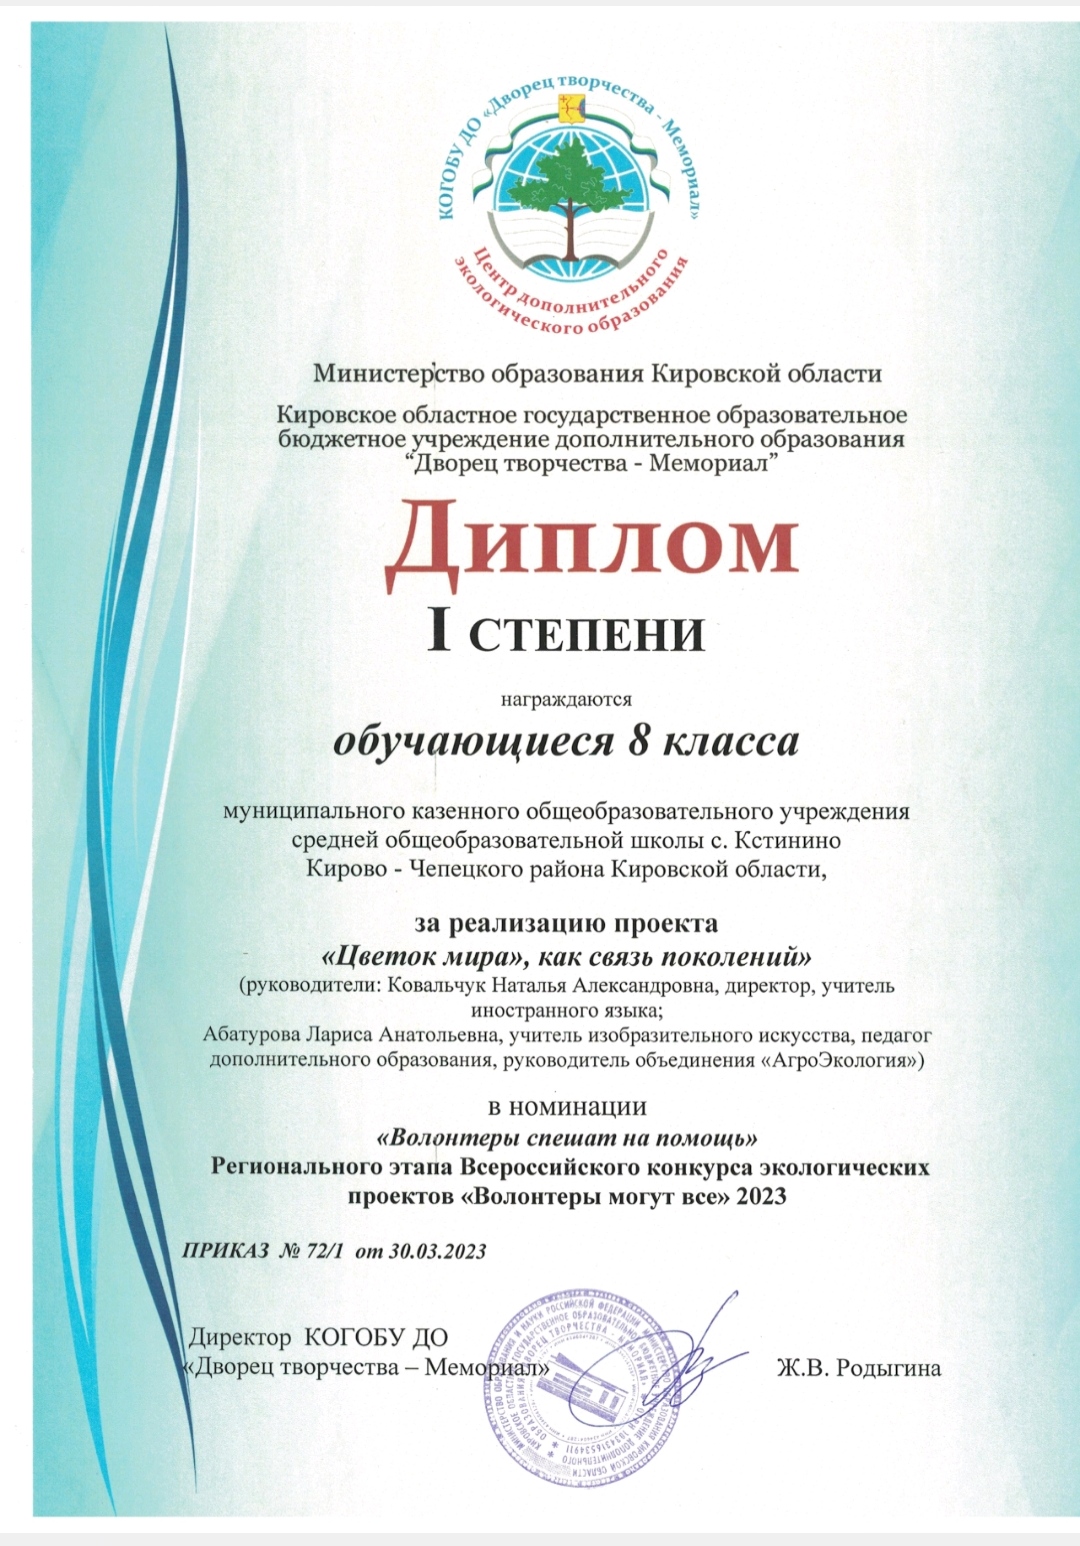 Региональный этап всероссийского конкурса экологических проектов «Волонтёры могут всё».